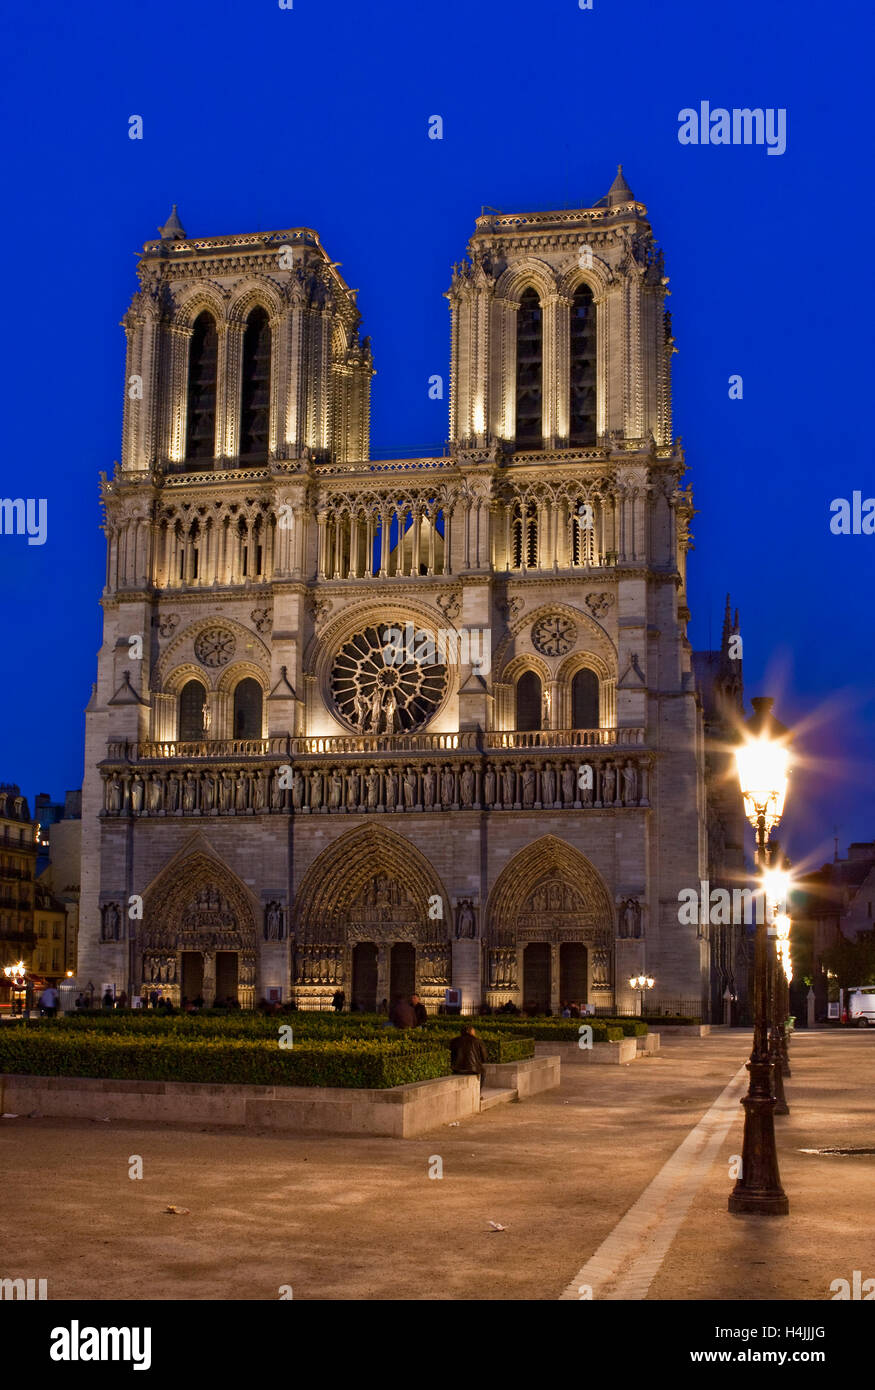 La Cathédrale Notre Dame de Paris la nuit, Paris, France, Europe Banque D'Images